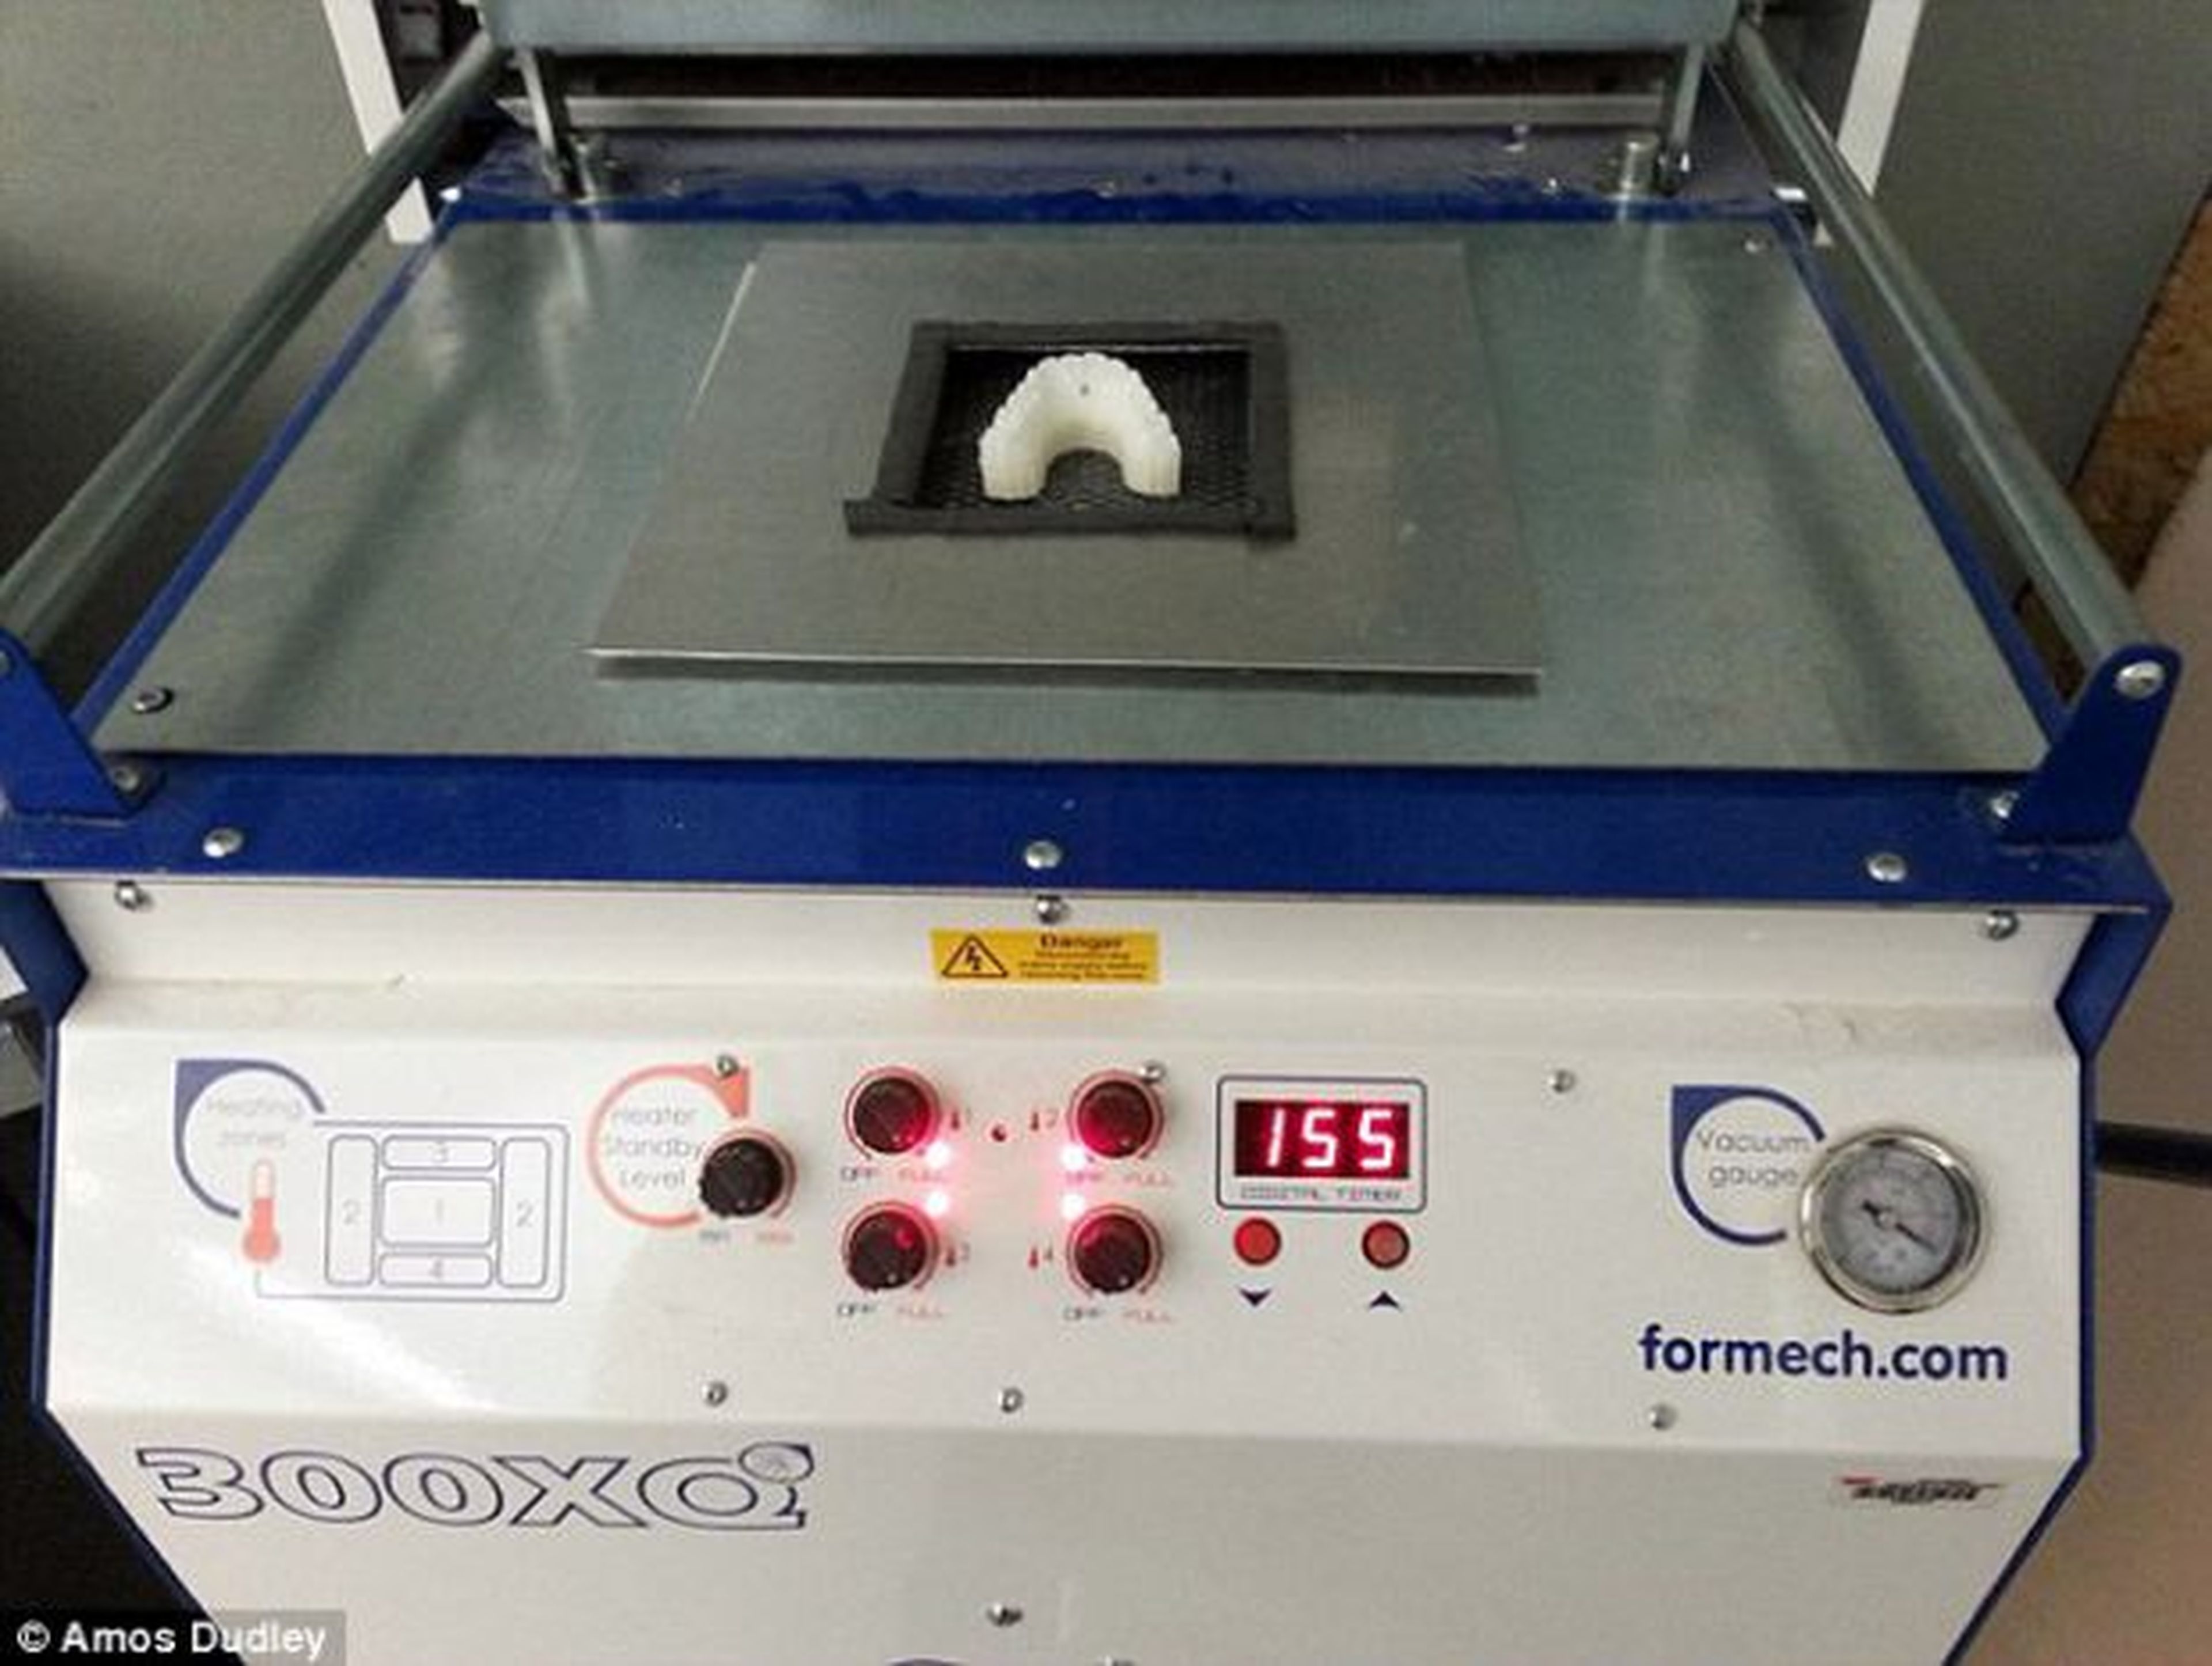 Corrector dental fabricado con una impresora 3D